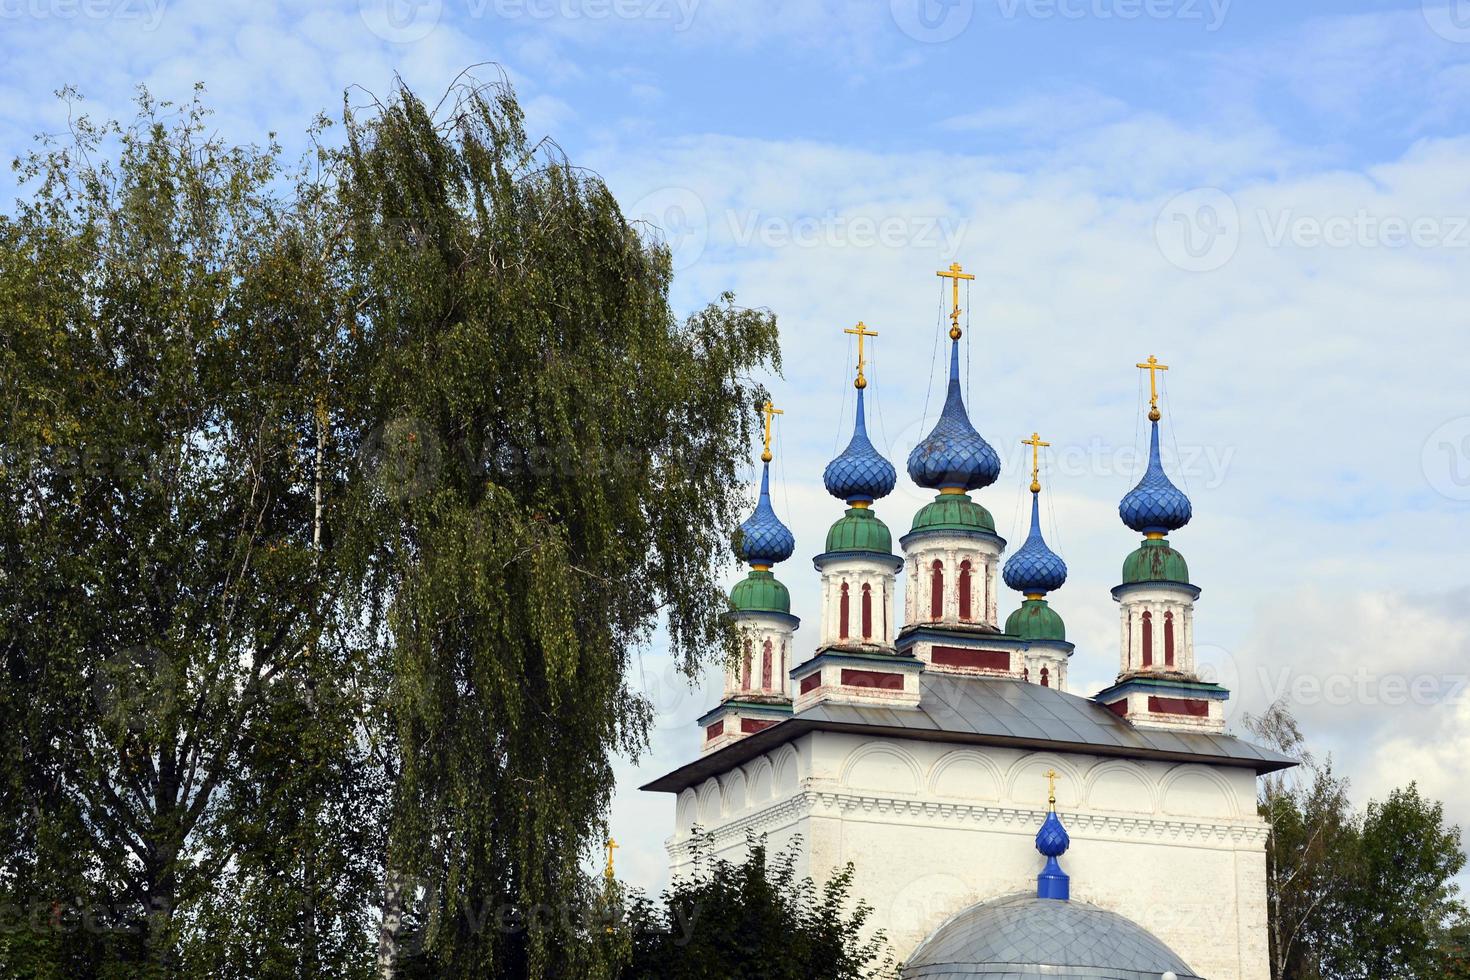 cúpulas de la iglesia con cruces contra el cielo azul. templo de piedra blanca en el pueblo ruso. foto